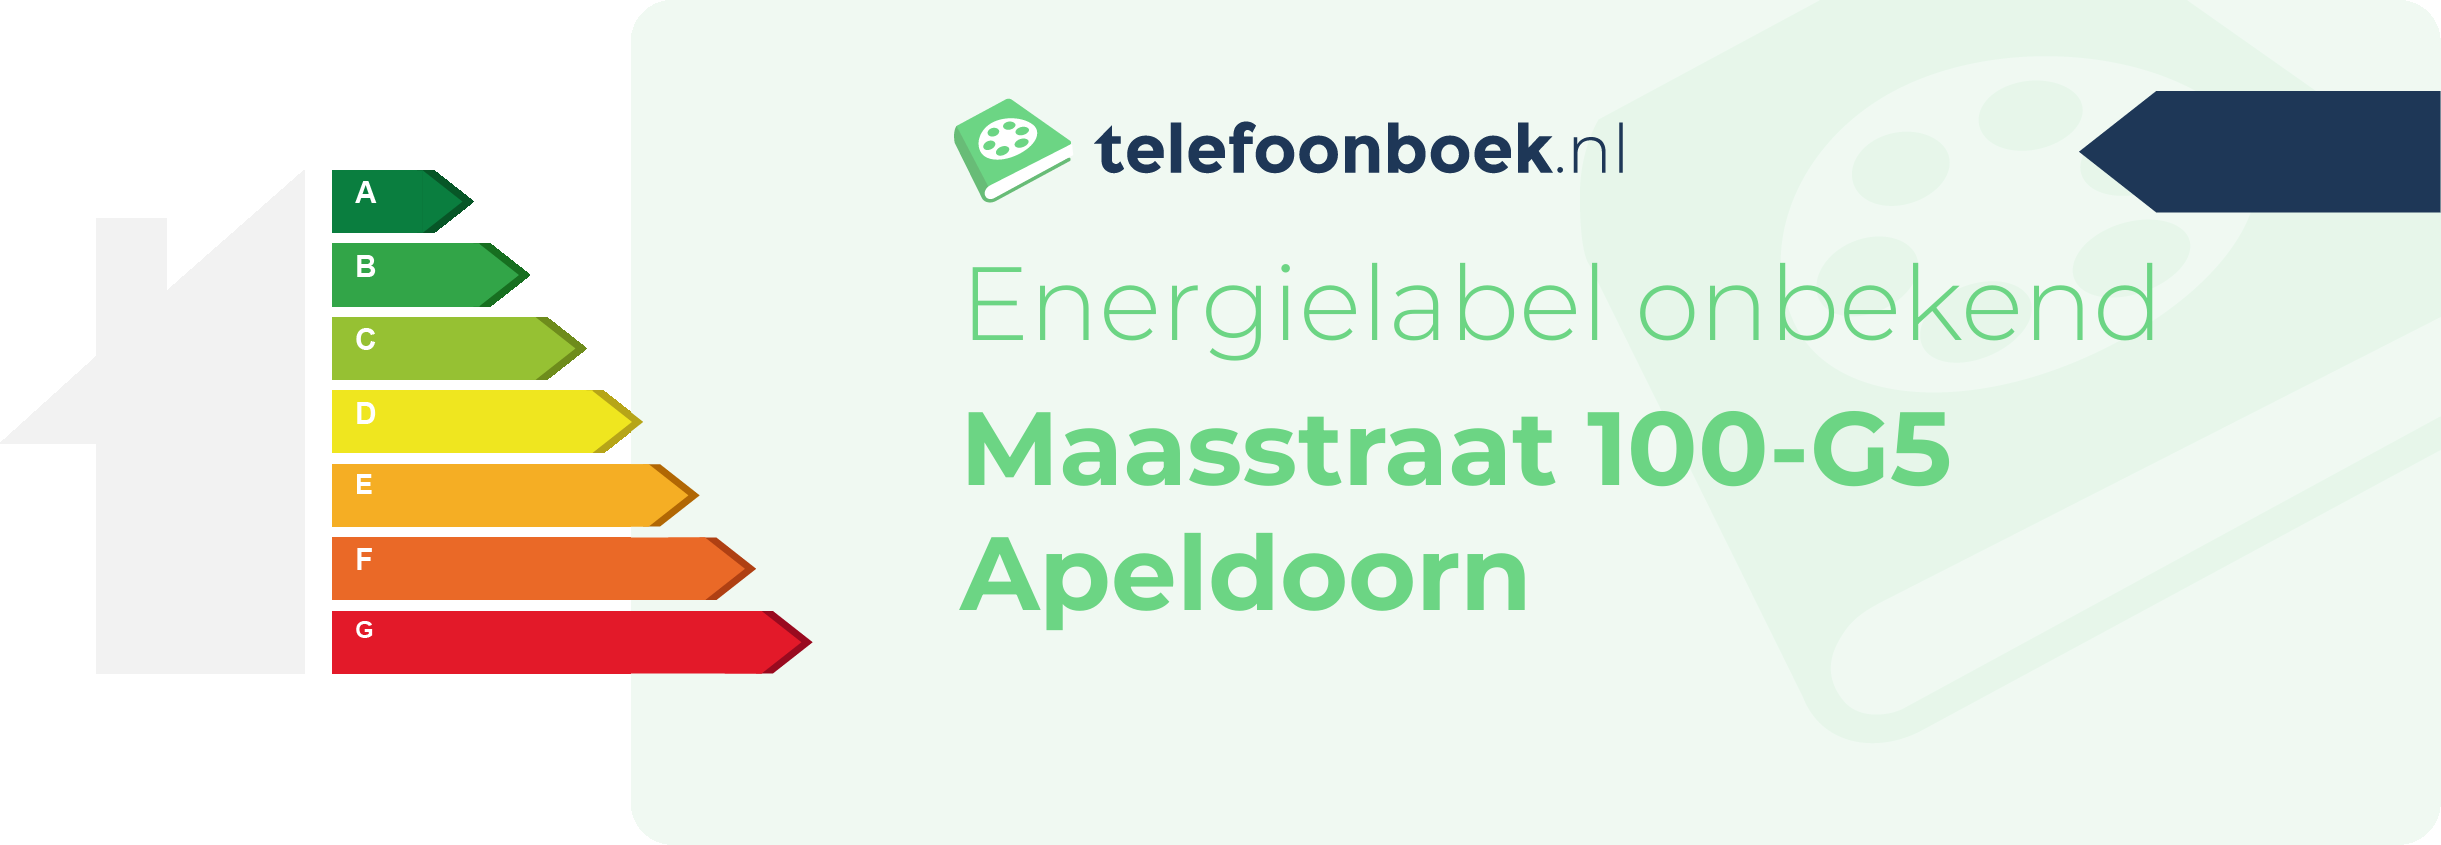 Energielabel Maasstraat 100-G5 Apeldoorn